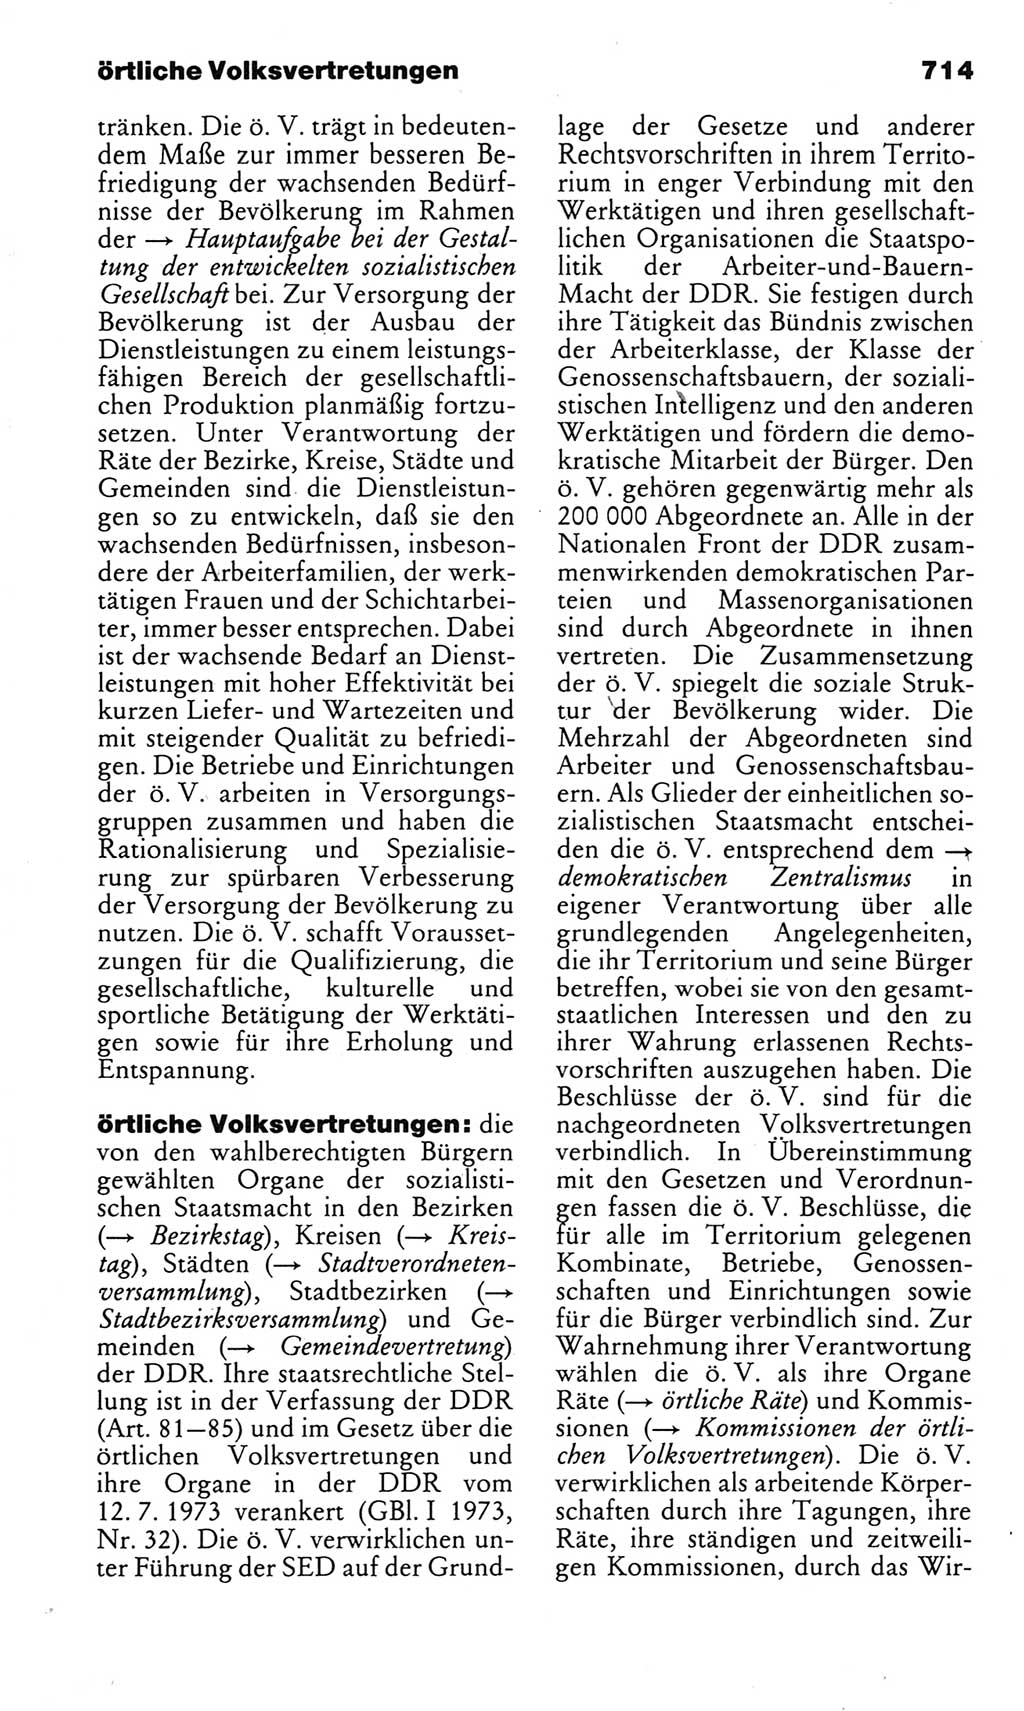 Kleines politisches Wörterbuch [Deutsche Demokratische Republik (DDR)] 1983, Seite 714 (Kl. pol. Wb. DDR 1983, S. 714)